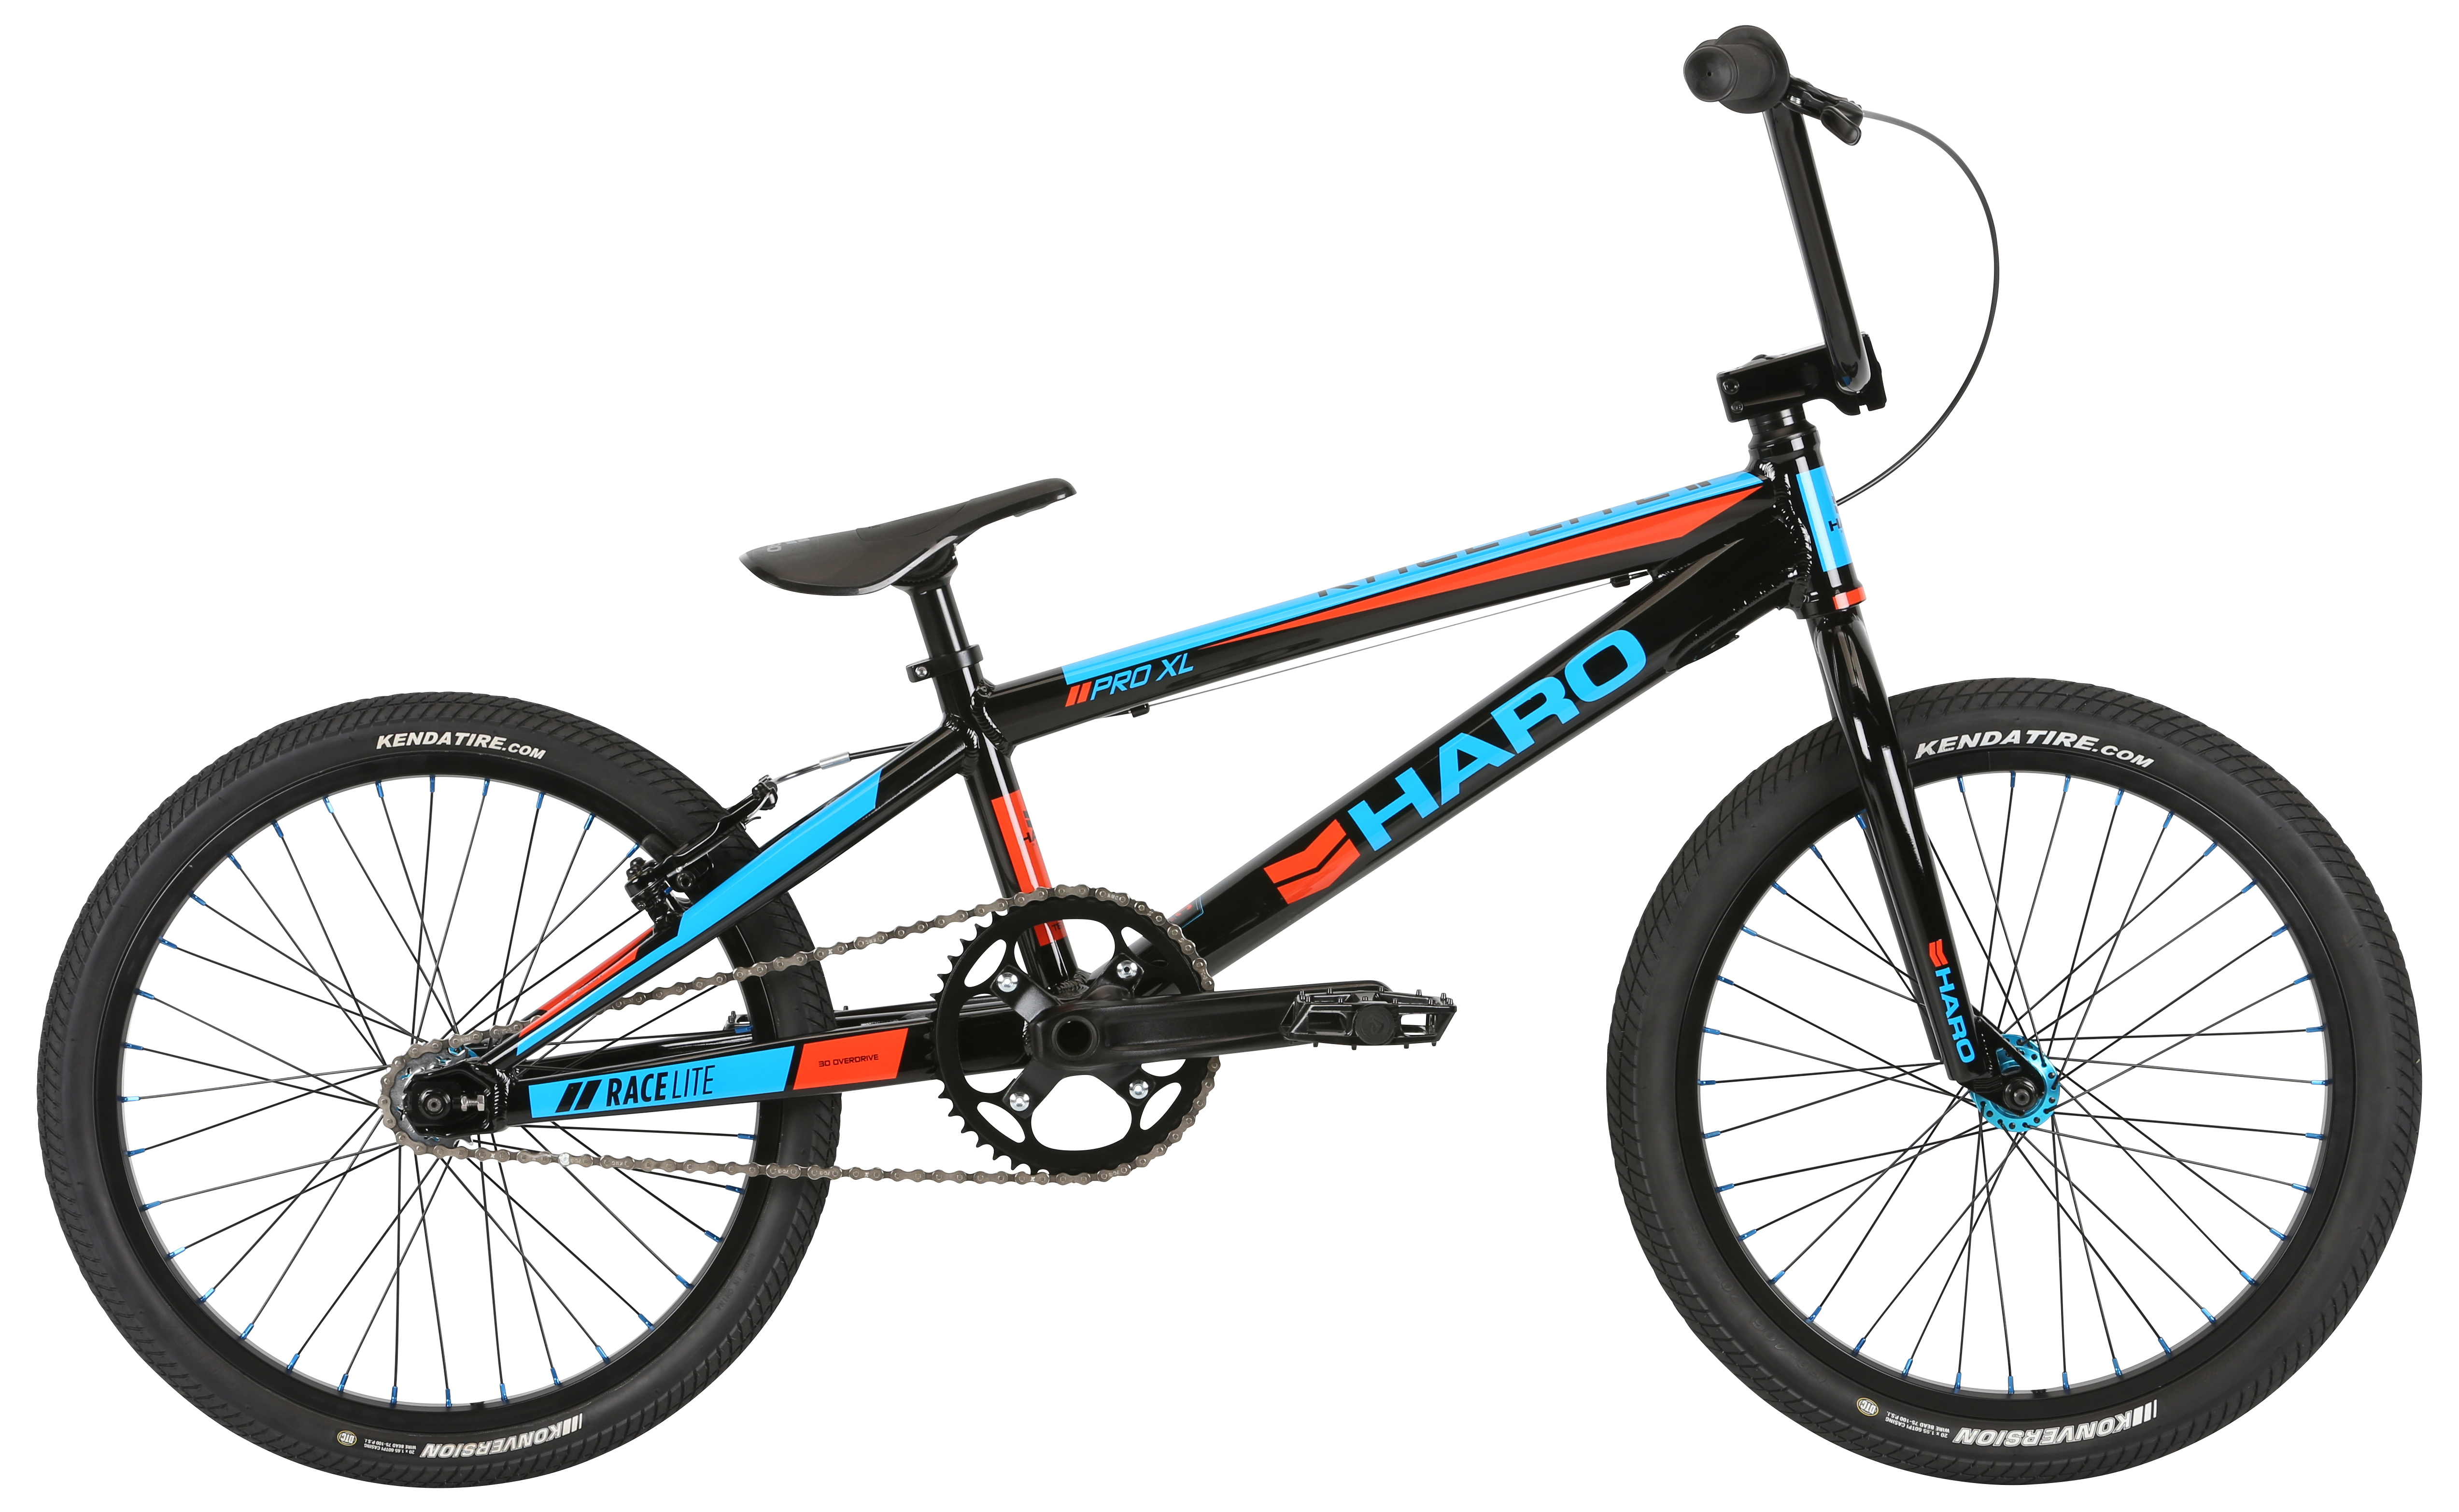  Велосипед Haro Pro XL 2019